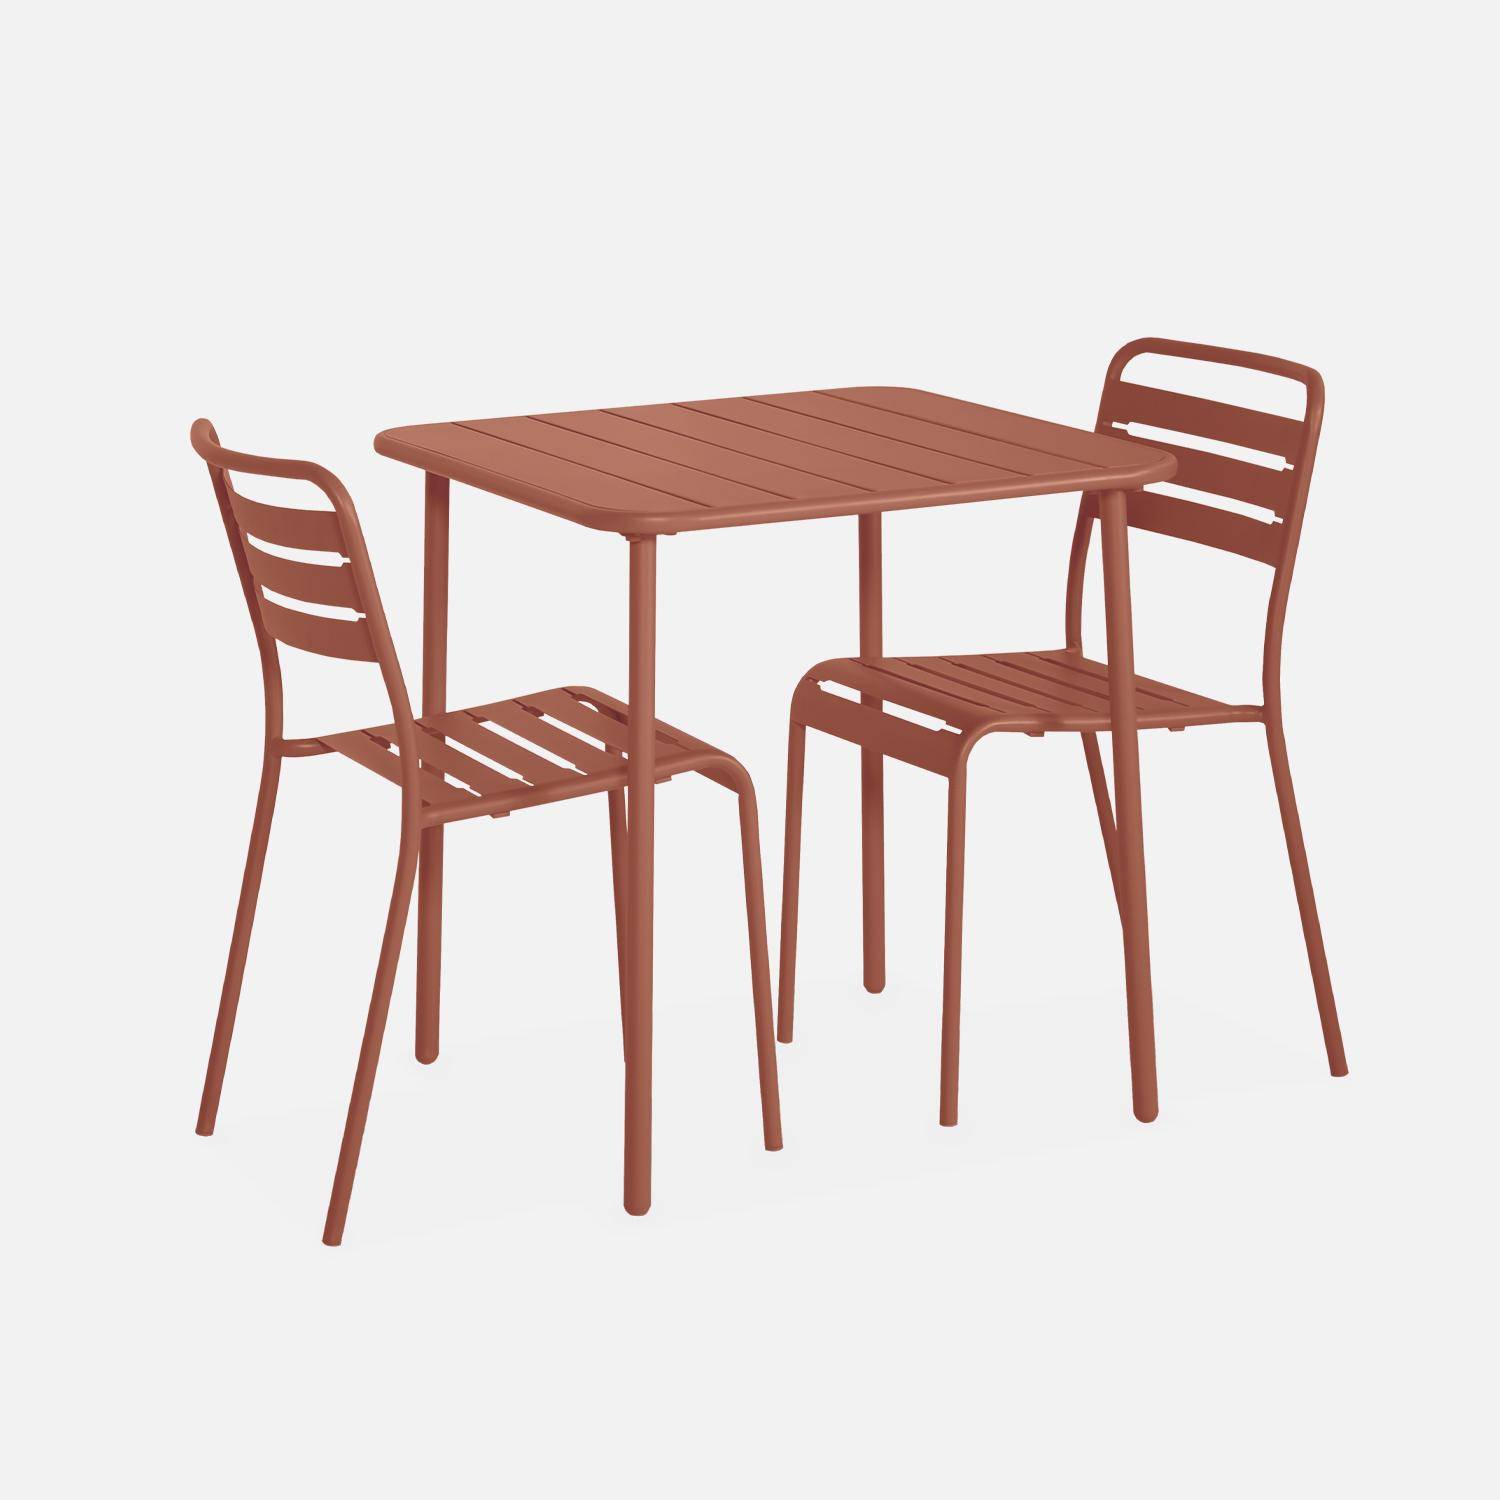 Amélia antraciet metalen tuintafel met 2 stoelen, latten en afgeronde hoeken, roestbestendige afwerking Photo4